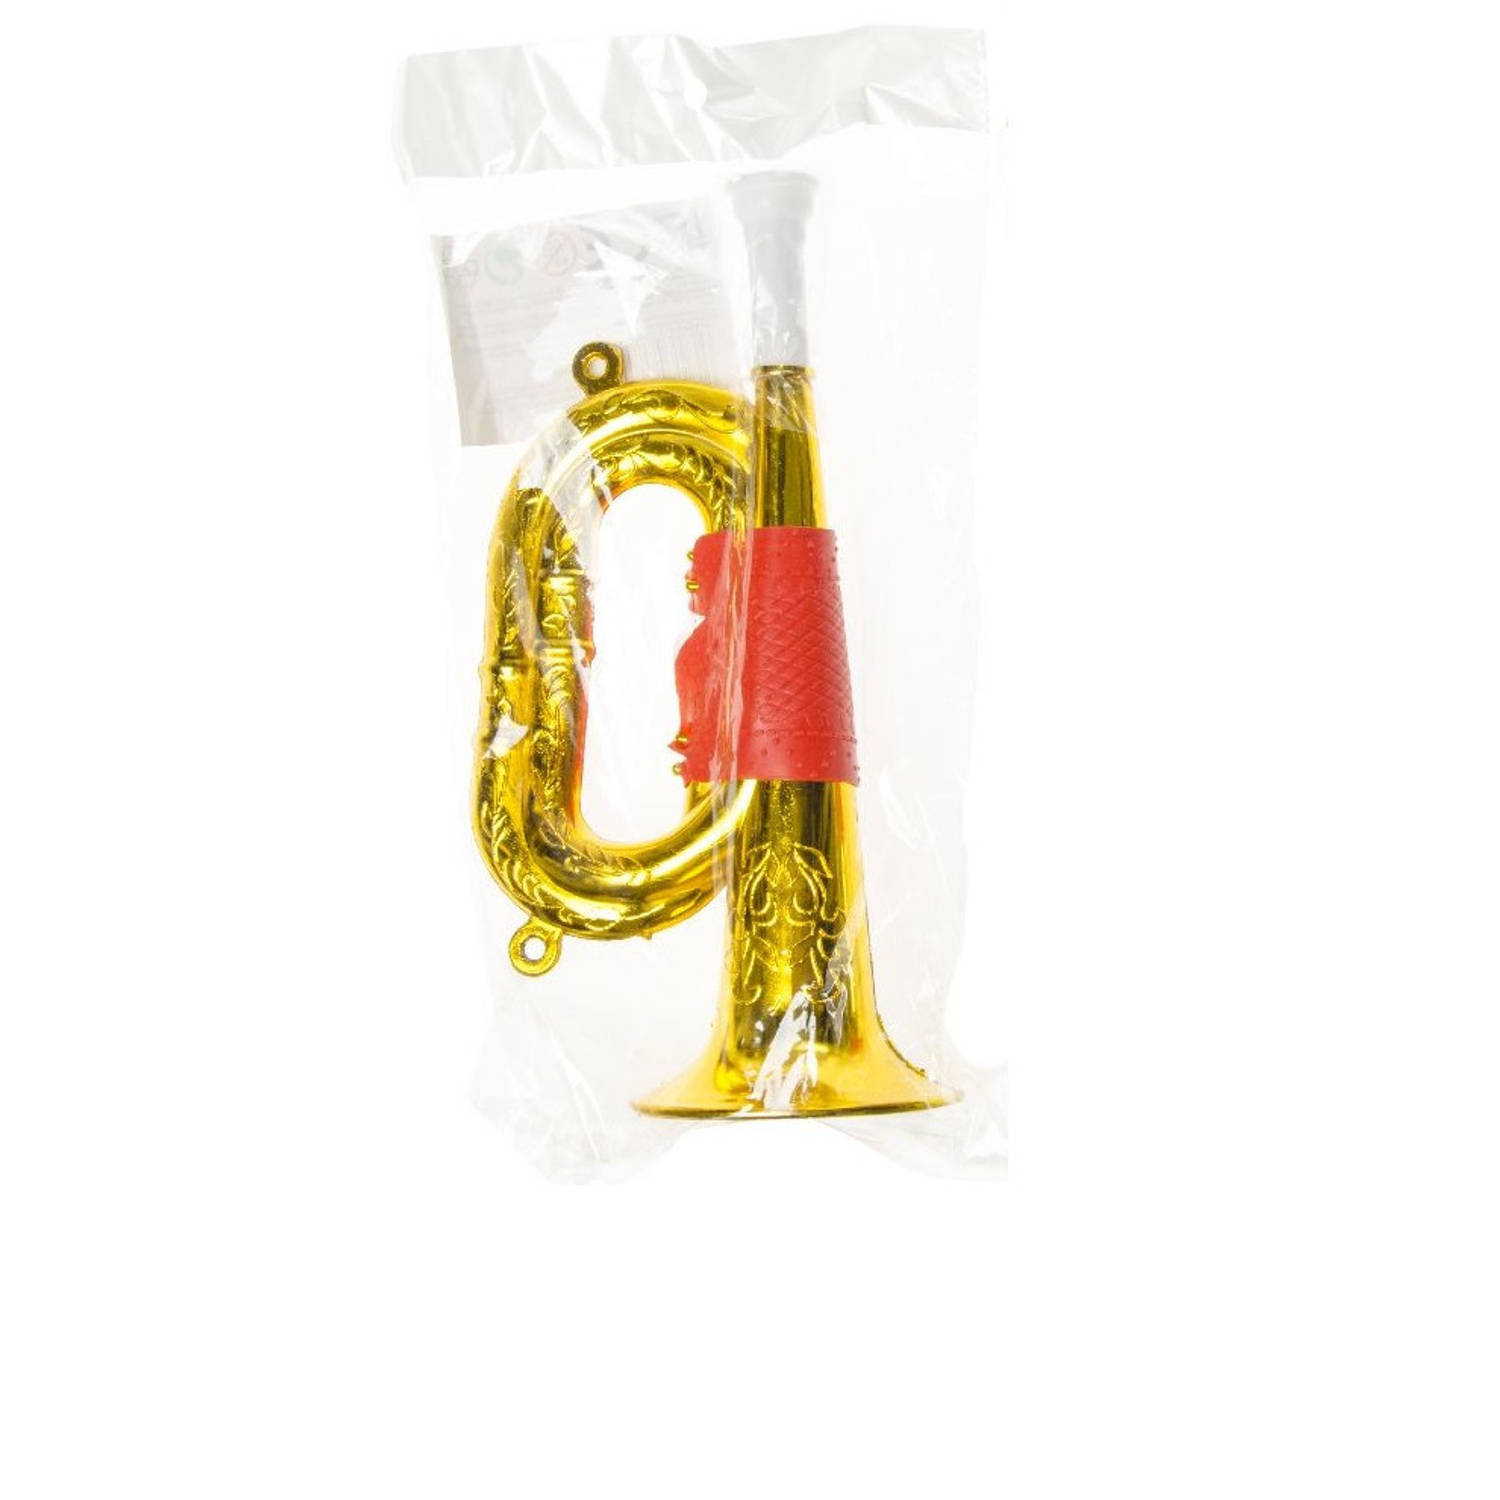 matras vragen coupon Plastic speelgoed trompet goud 22 cm - Speelgoedinstrumenten | Blokker